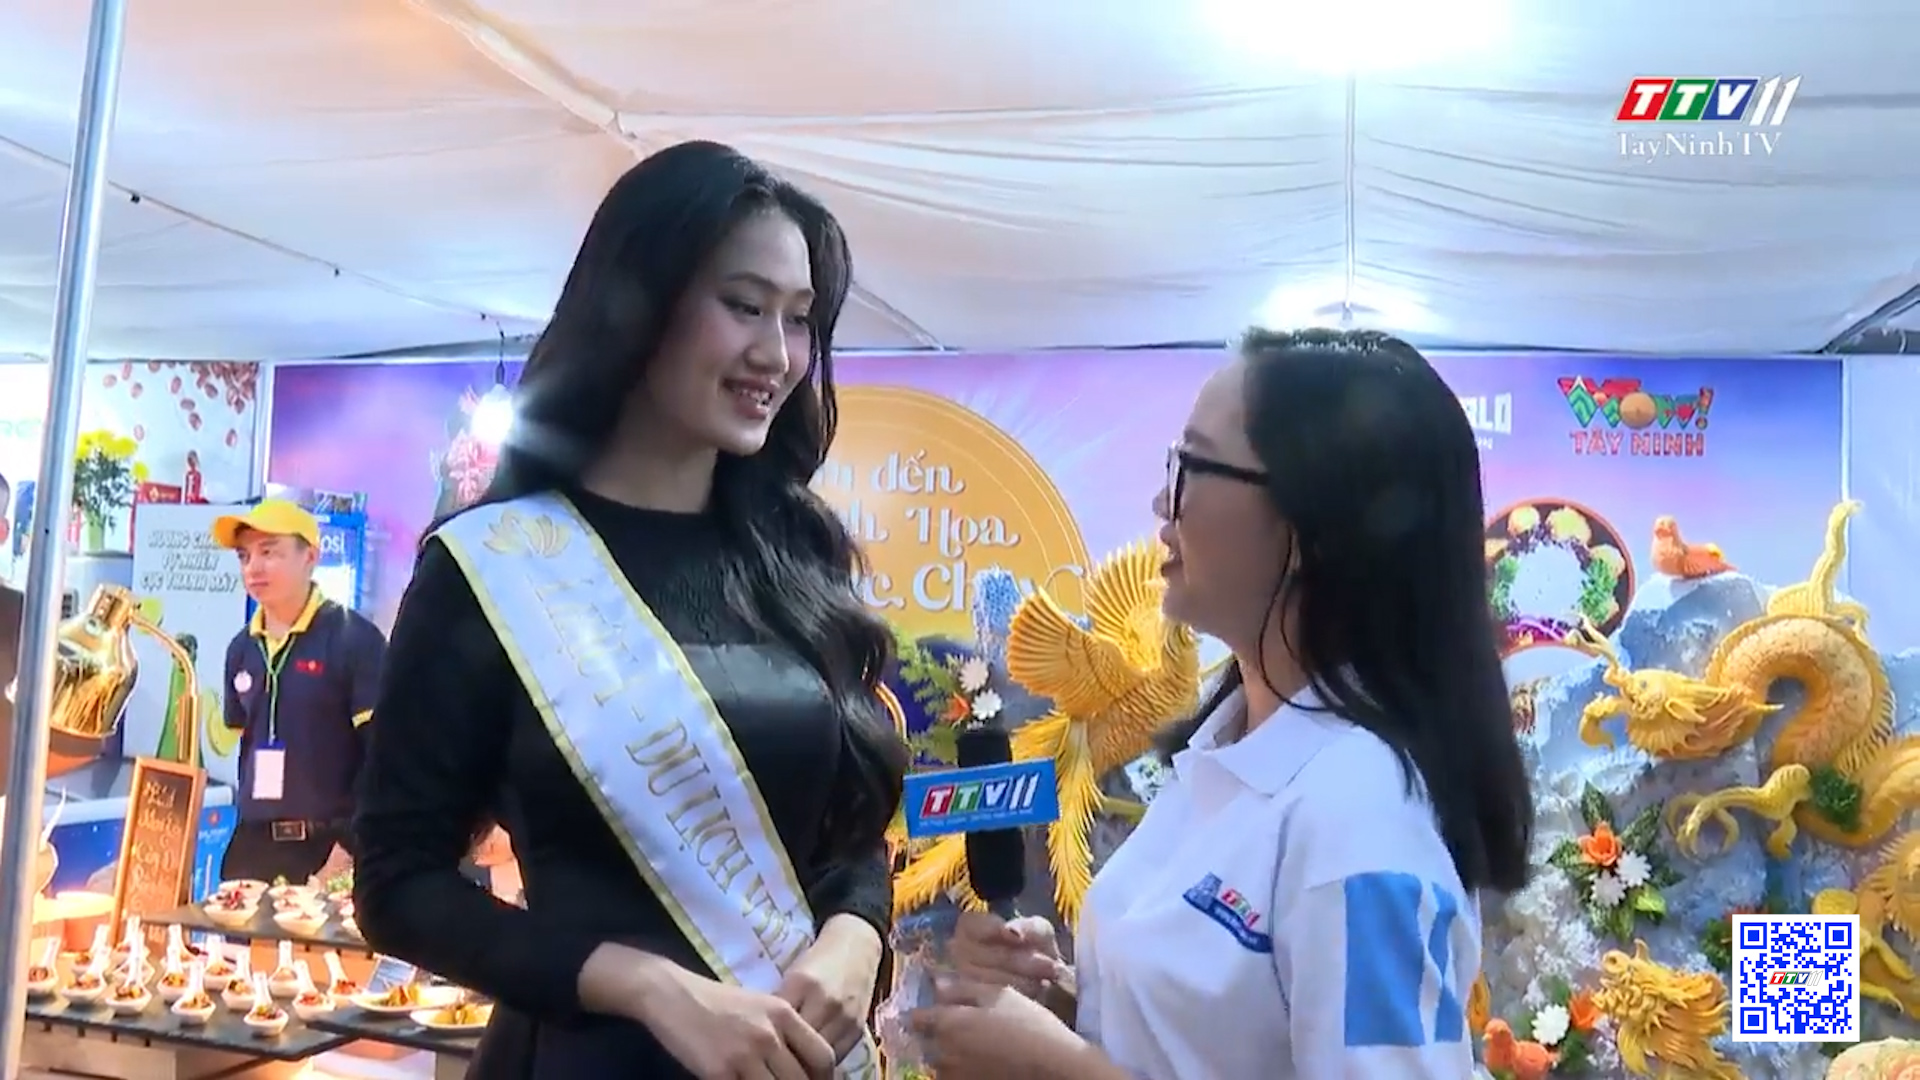 Giao lưu Á hậu 1 Trịnh Thị Trúc Linh tại Lễ hội Nghệ thuật chế biến món ăn chay tỉnh Tây Ninh | TayNinhTV